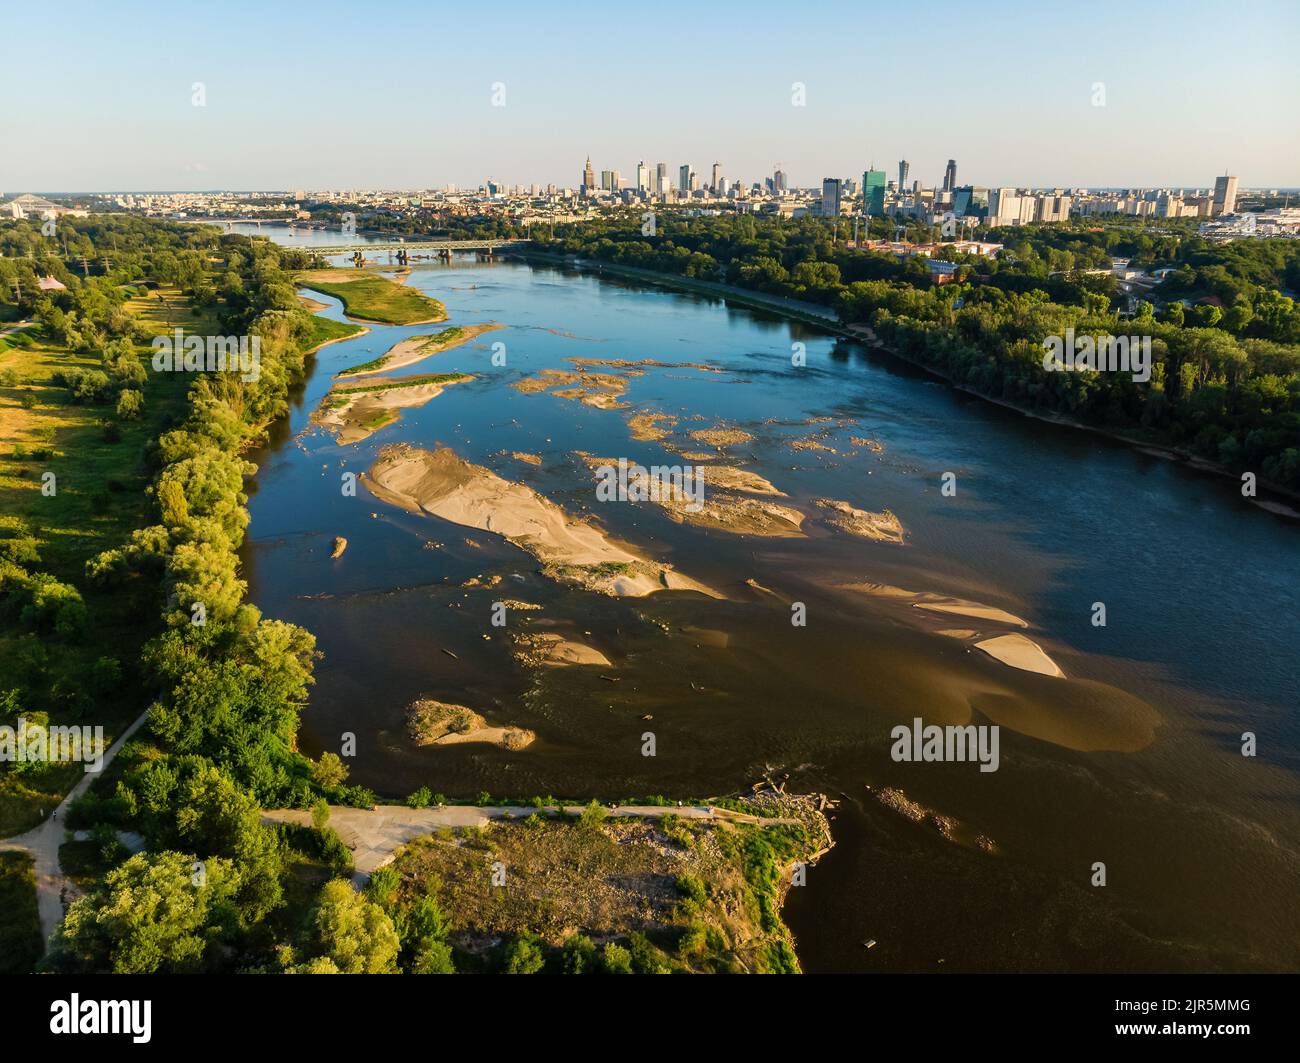 Bajo nivel de agua en el río Vístula, efecto de la sequía visto desde la perspectiva del ojo del pájaro. Ciudad de Varsovia en una distancia. Foto de stock